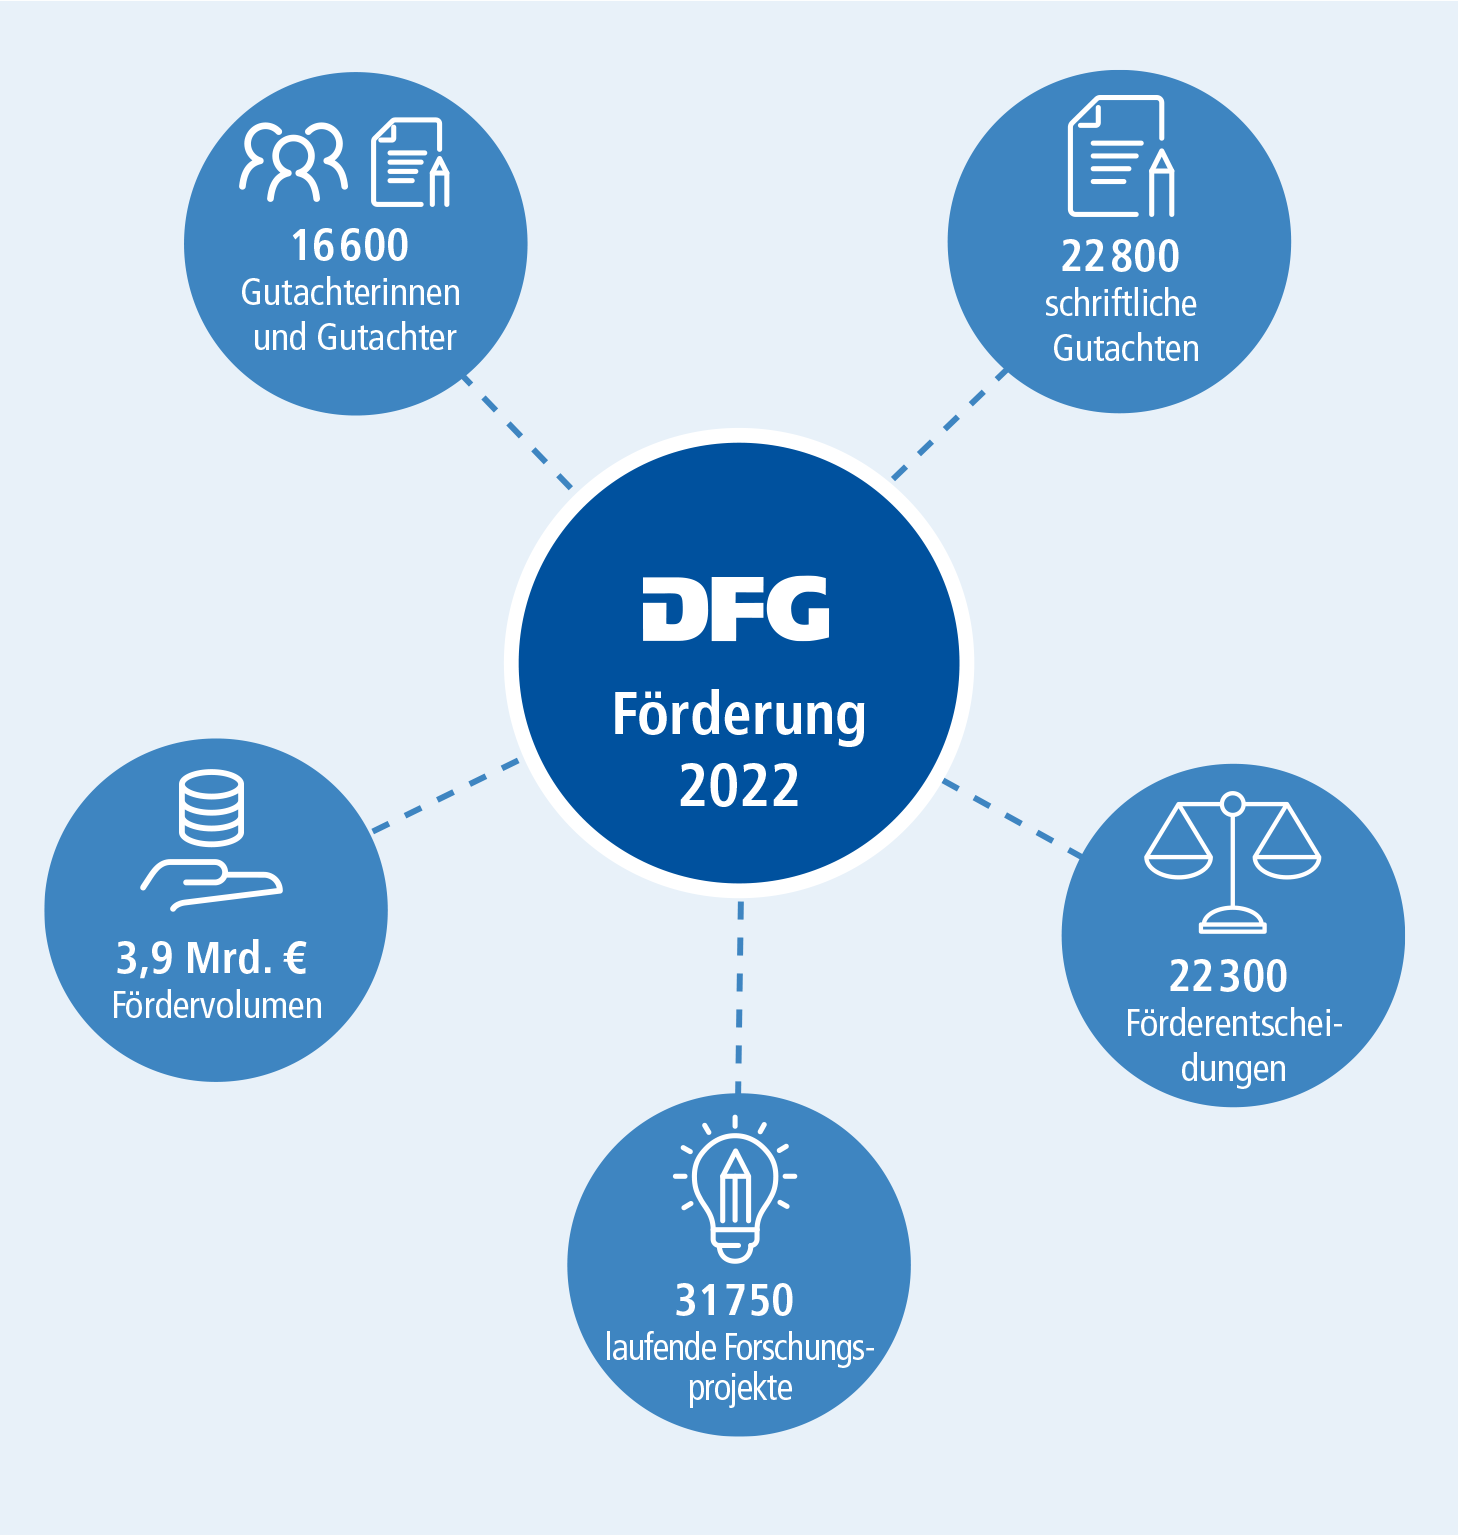 Grafik aus dem Jahresbericht 2022: Das Fördergeschäft der DFG im Jahr 2022